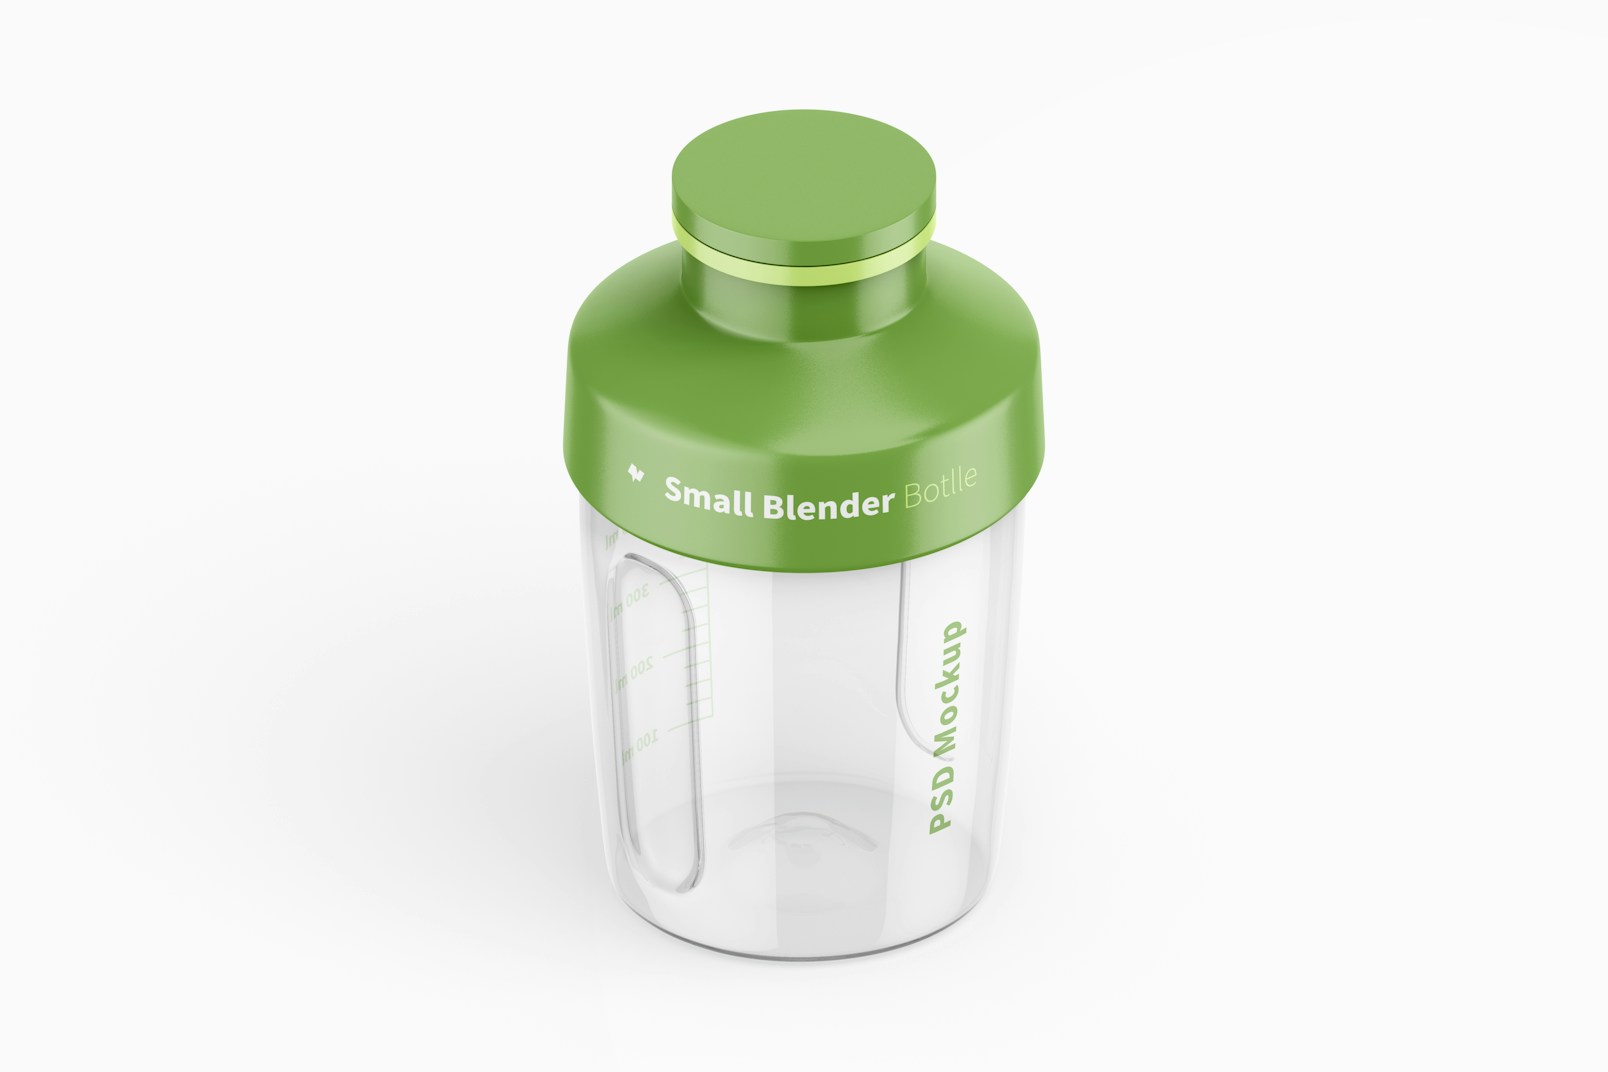 Small Blender Bottle Mockup, Isometric View